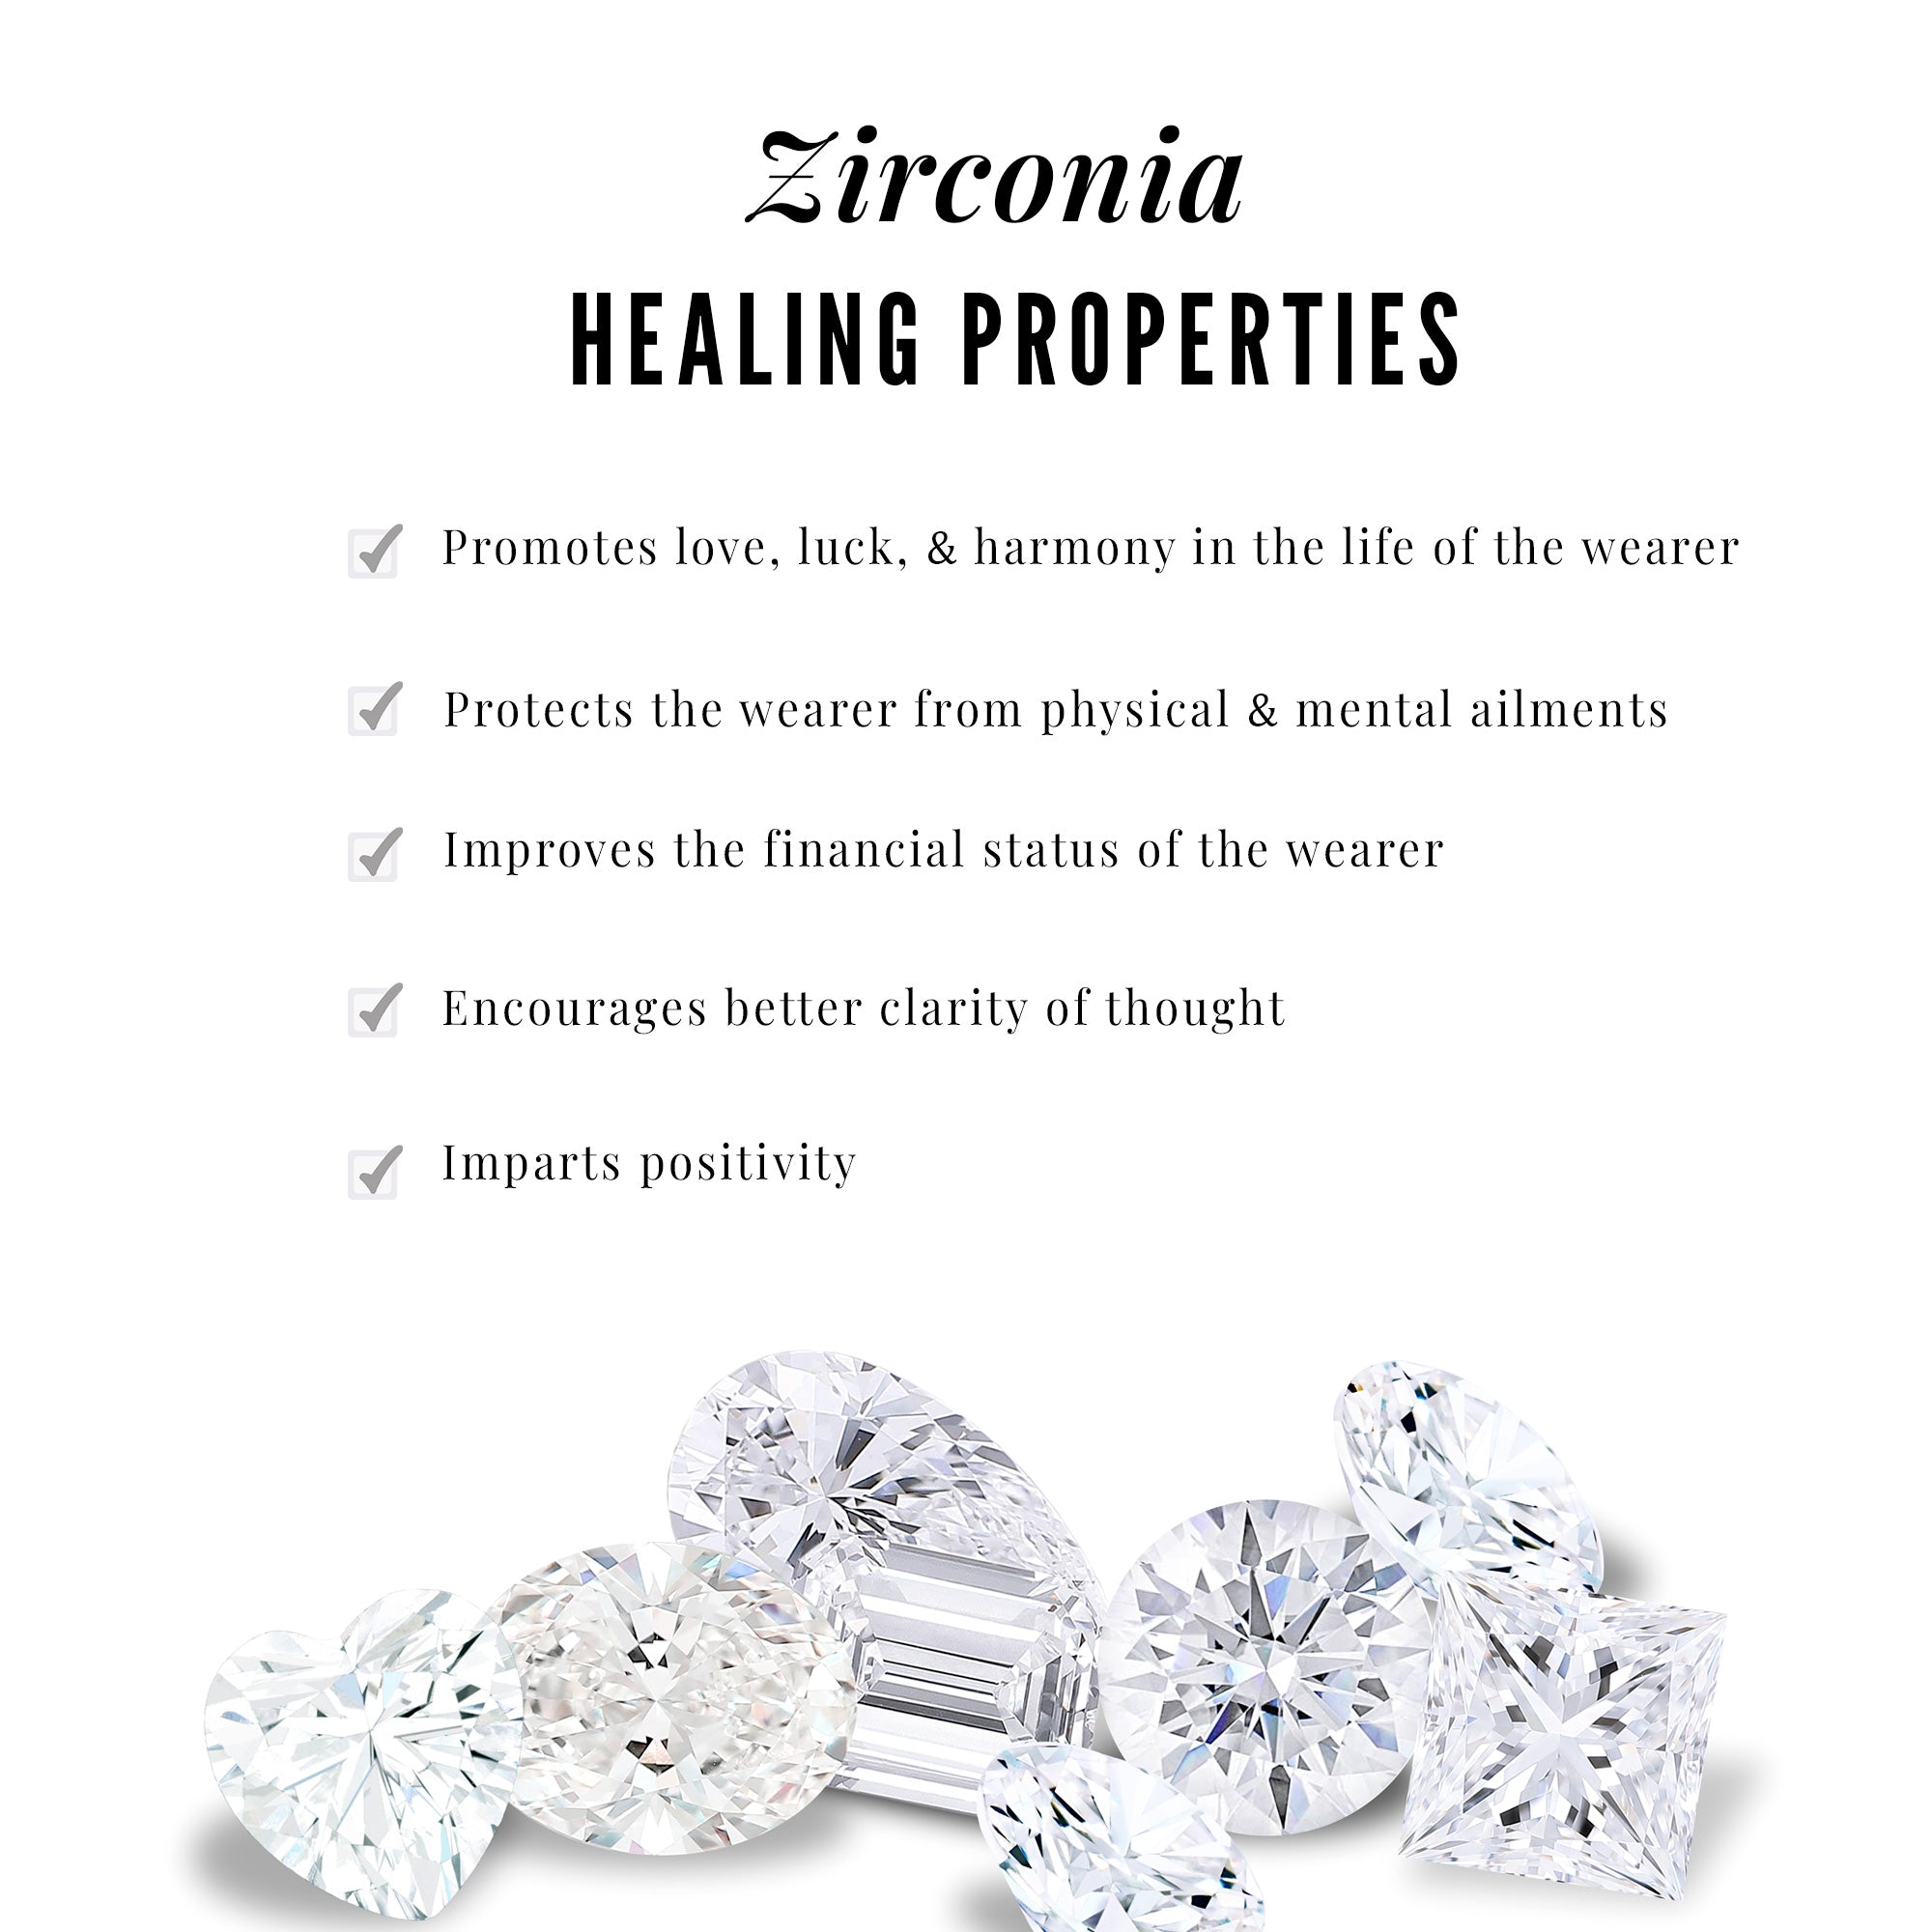 Solitaire Zircon Infinity Engagement Ring in Gold Zircon - ( AAAA ) - Quality - Rosec Jewels